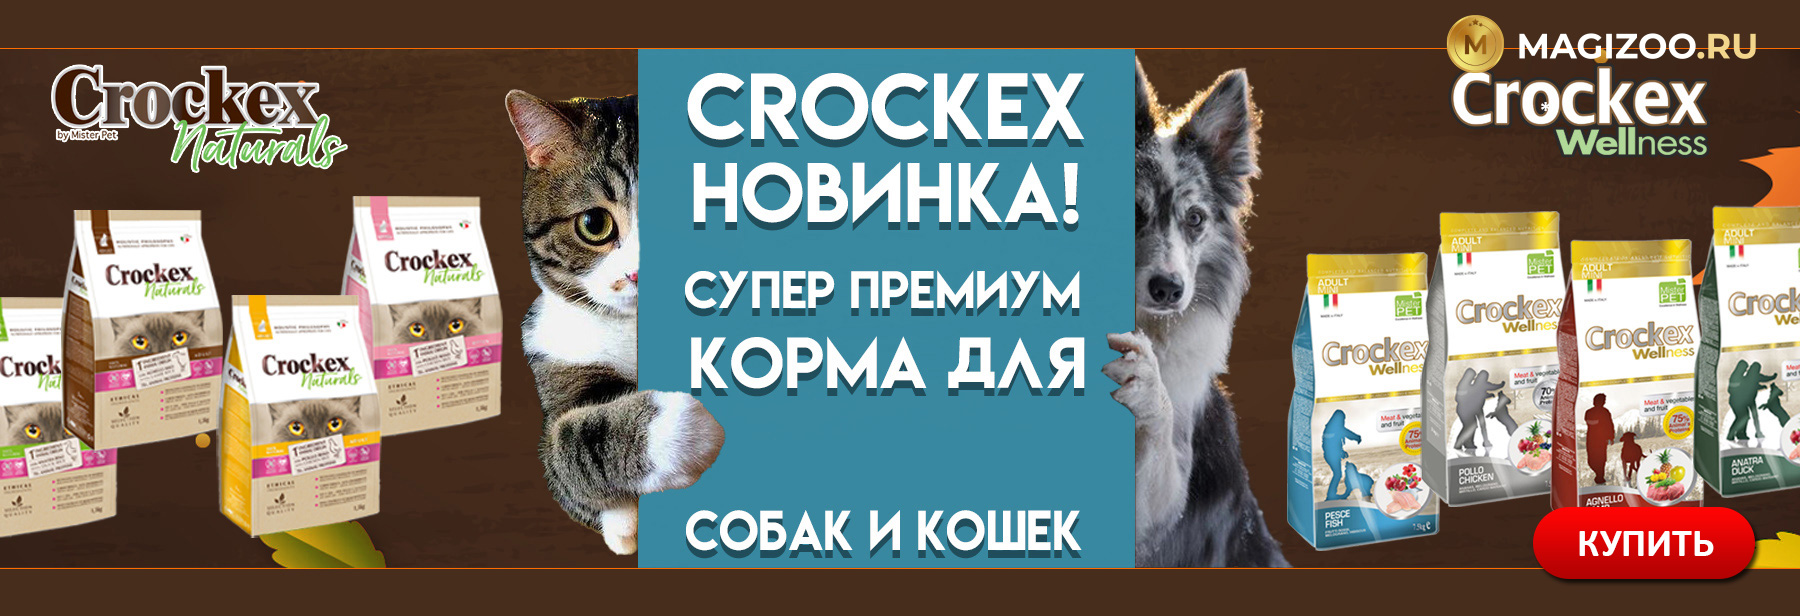 Новинка! Сухие корма CROCKEX для собак и кошек!